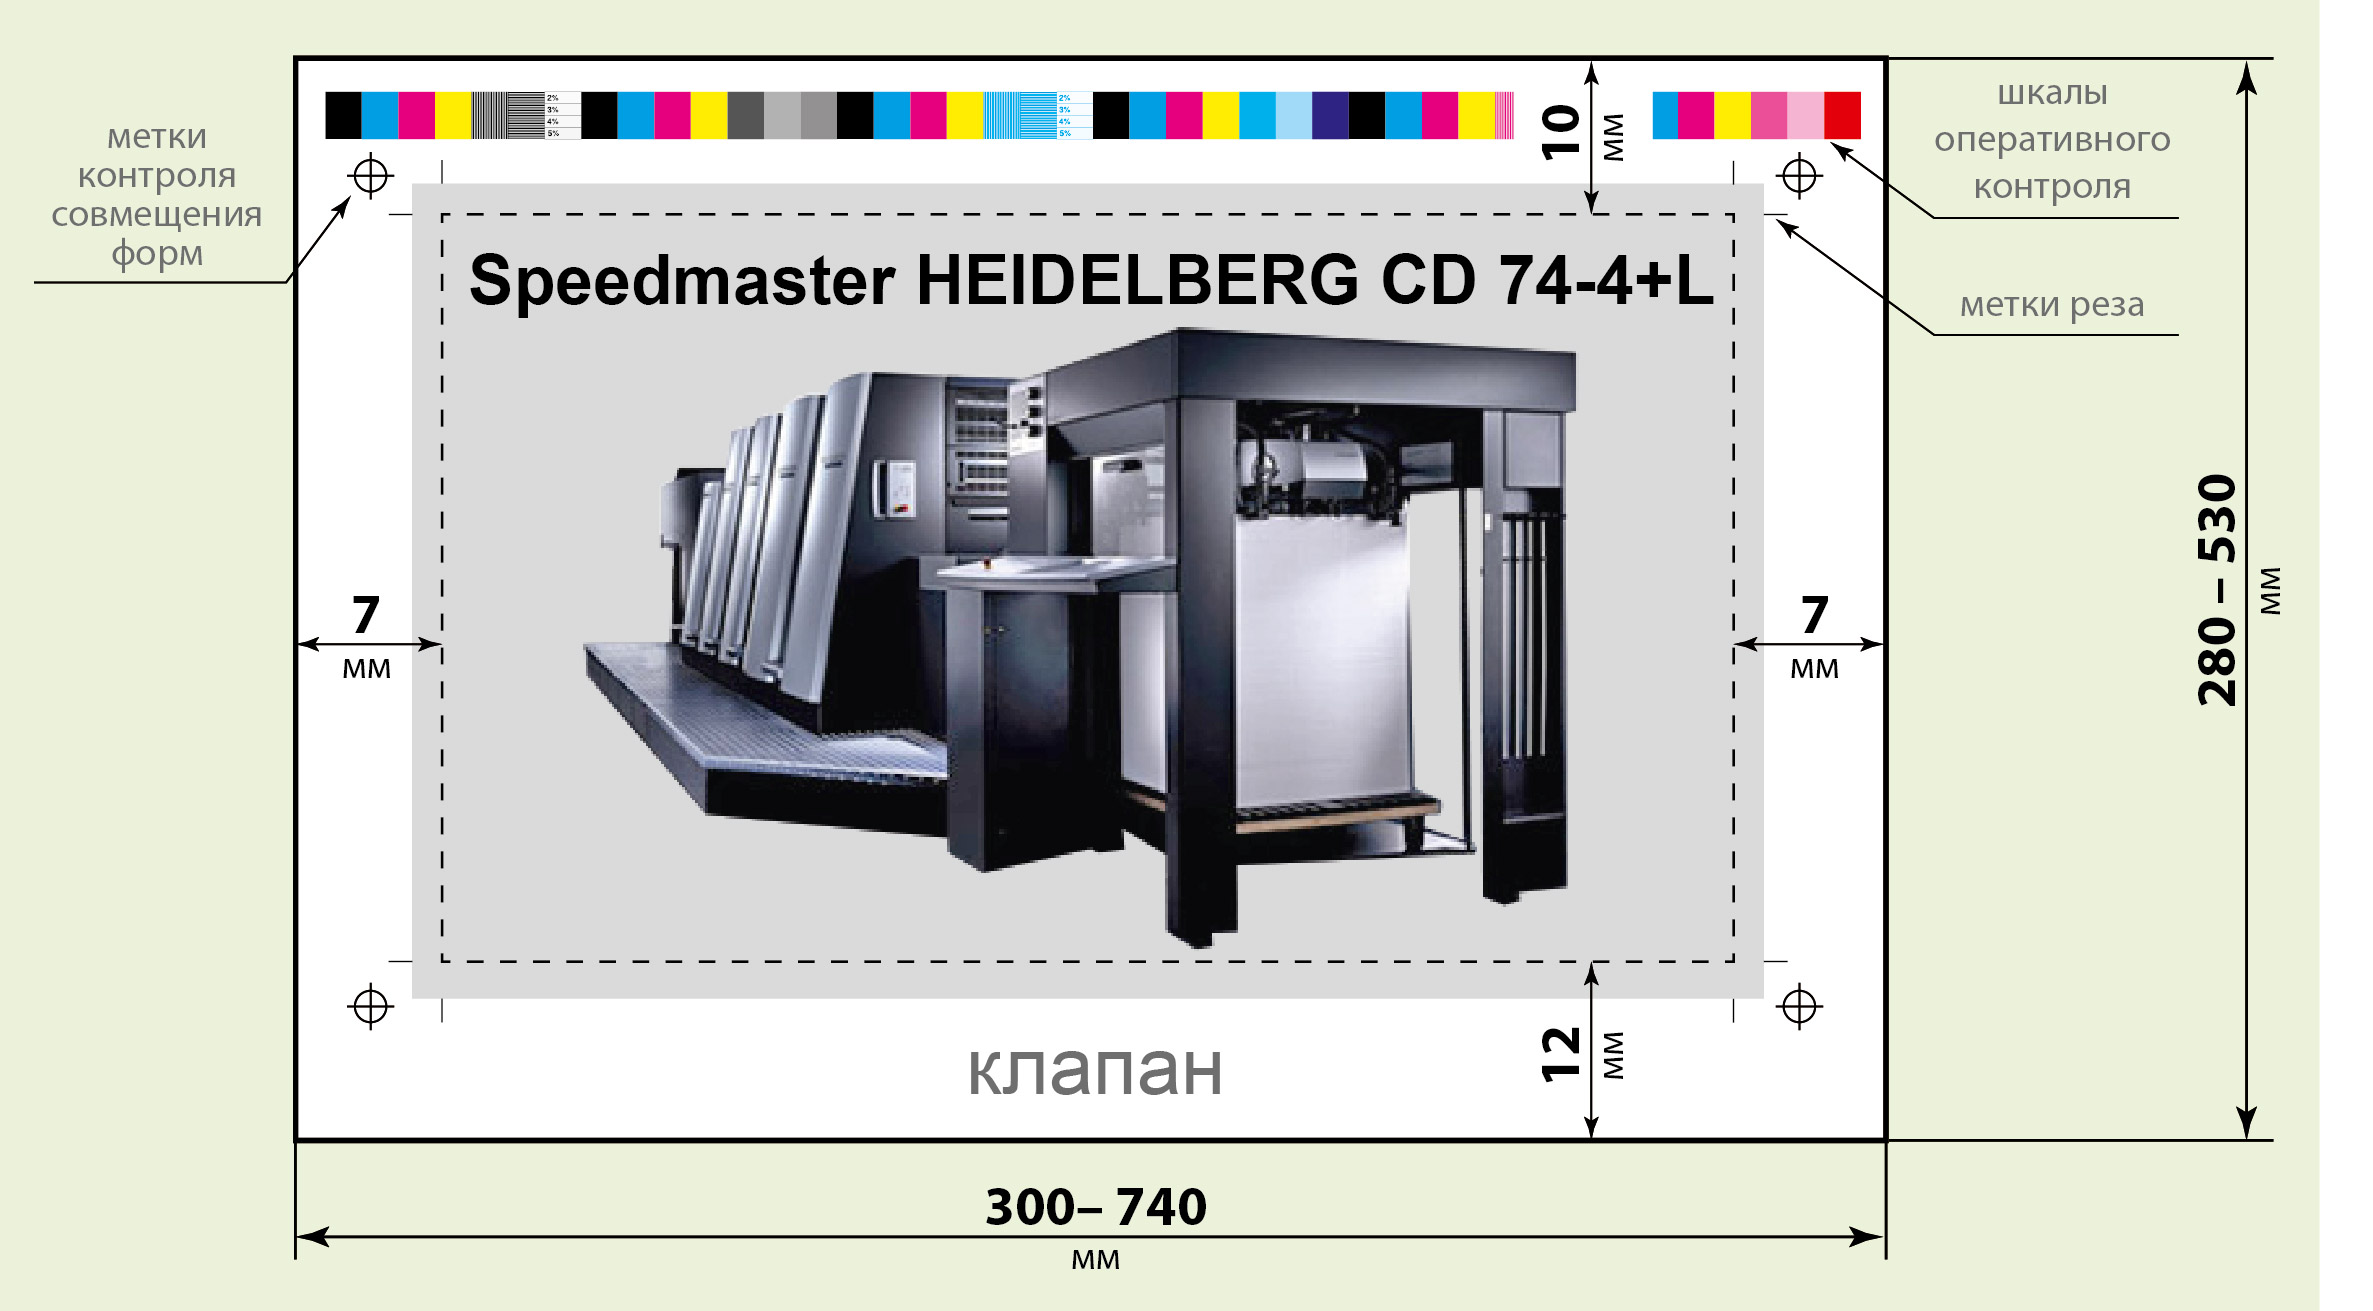 Схема печатного листа Speedmaster HEIDELBERG CD 74-4+L типографии «Август Борг»